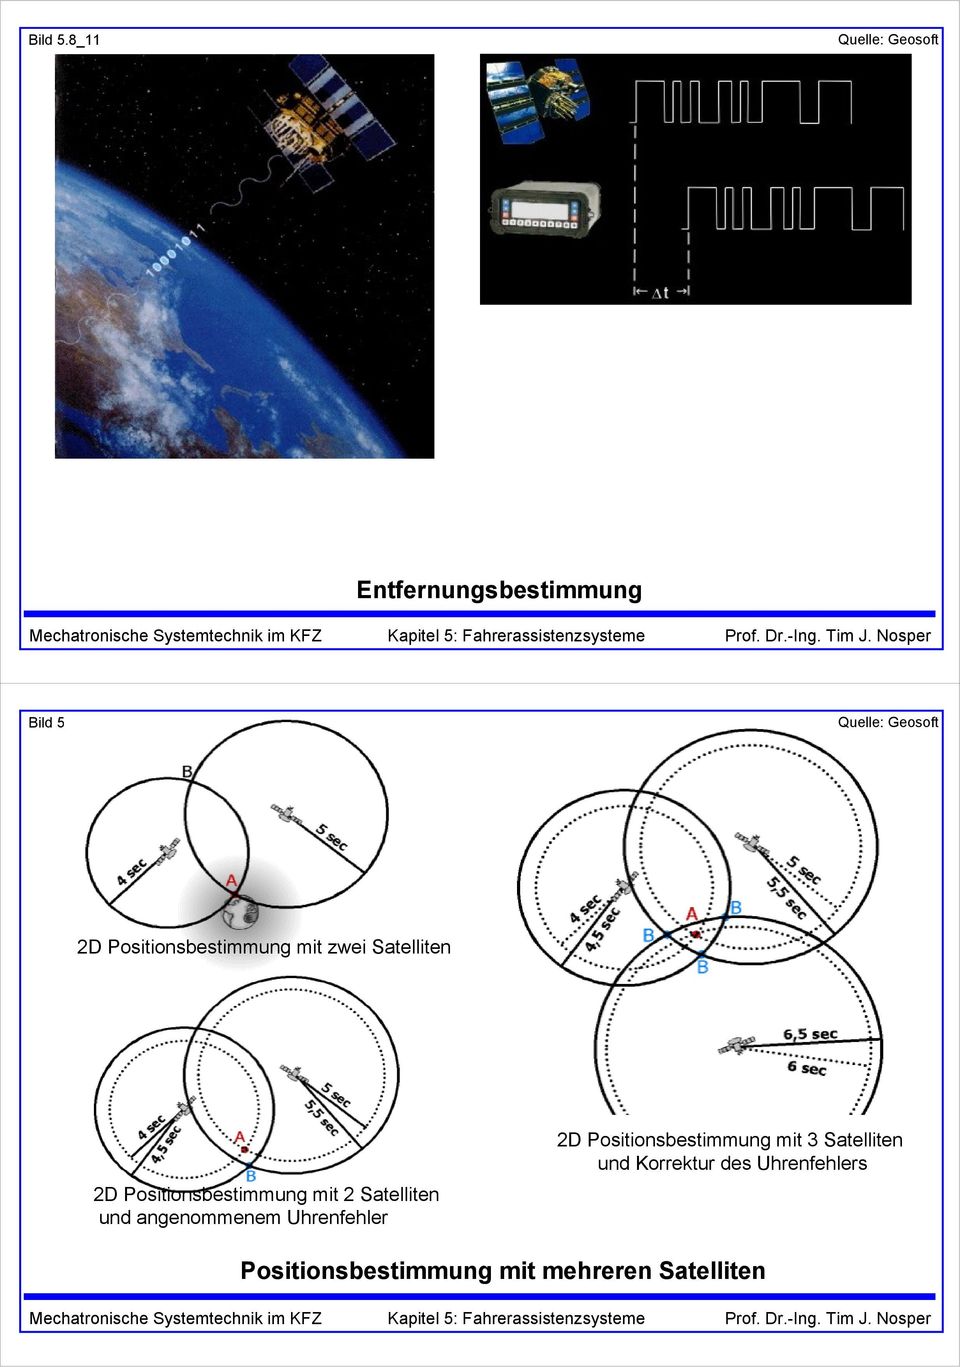 Positionsbestimmung mit 2 Satelliten und angenommenem Uhrenfehler